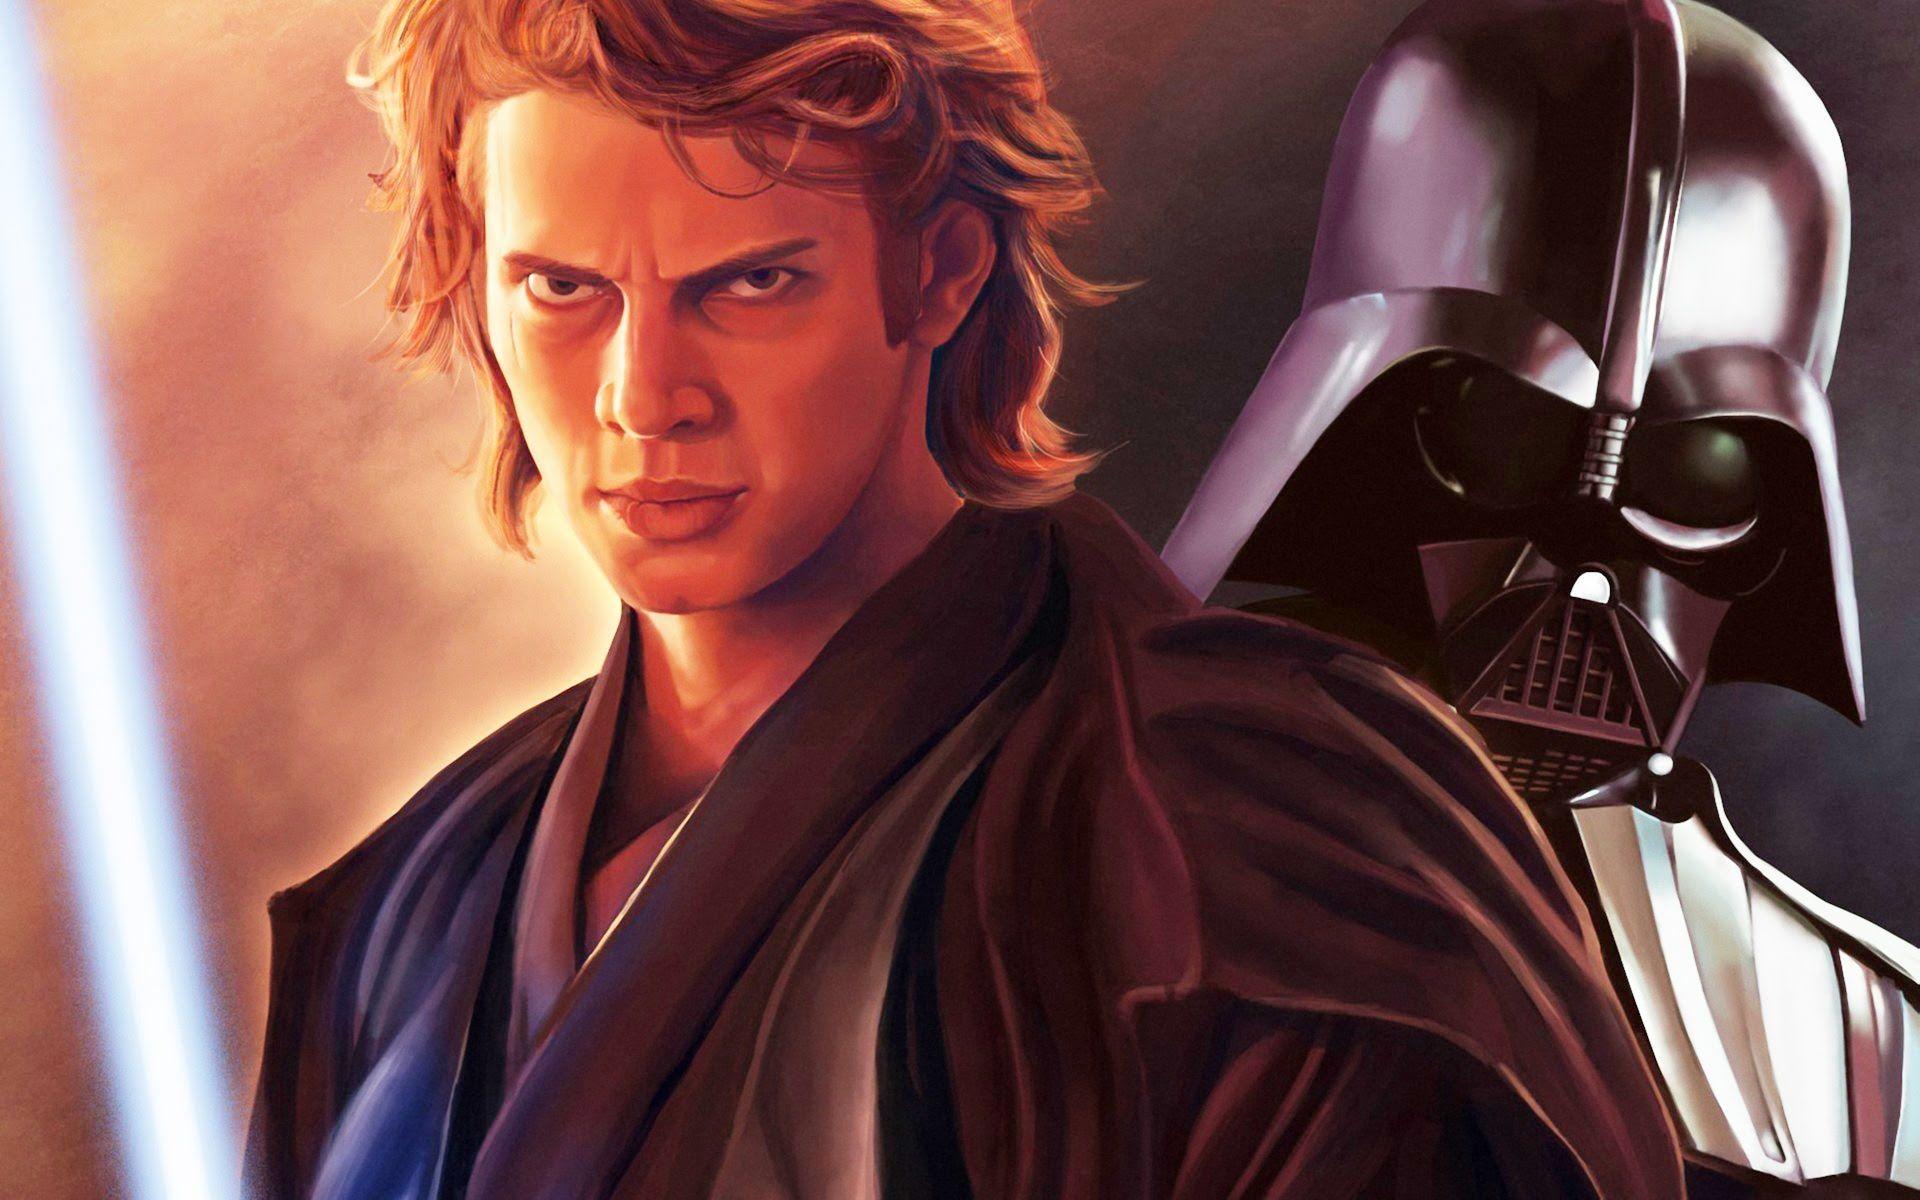 Anakin Skywalker to Return in Star Wars Episode 8? What of Darth